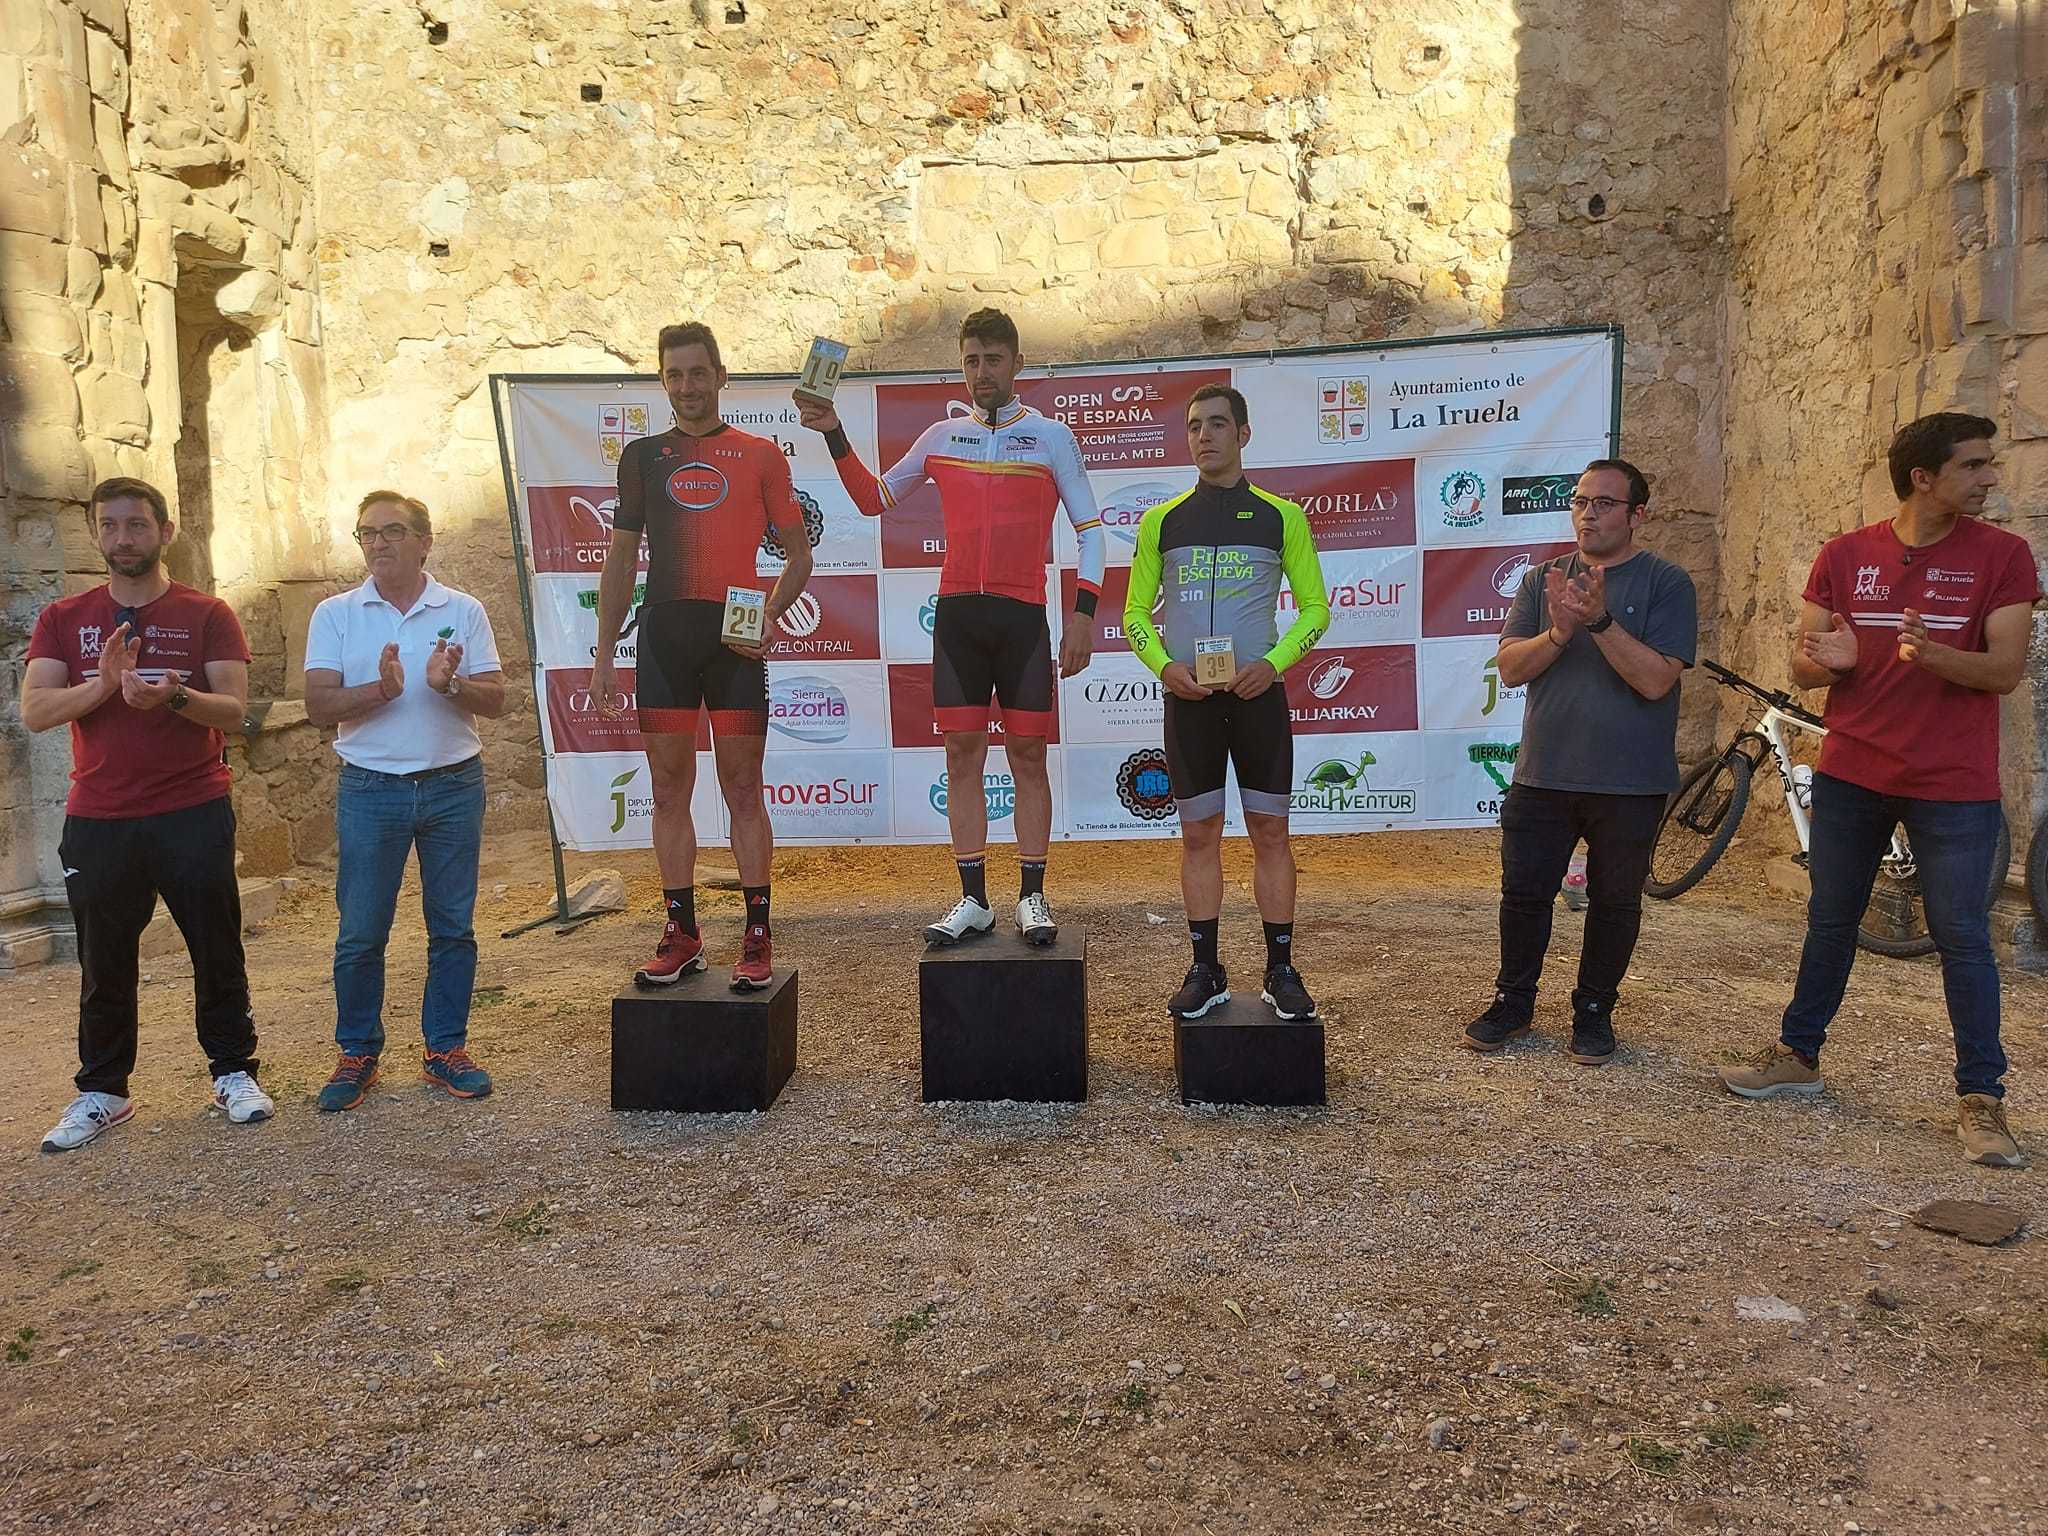 Raúl Castrillo y Cristina Morán vencen en la Copa de España de Ultramaratón de La Iruela